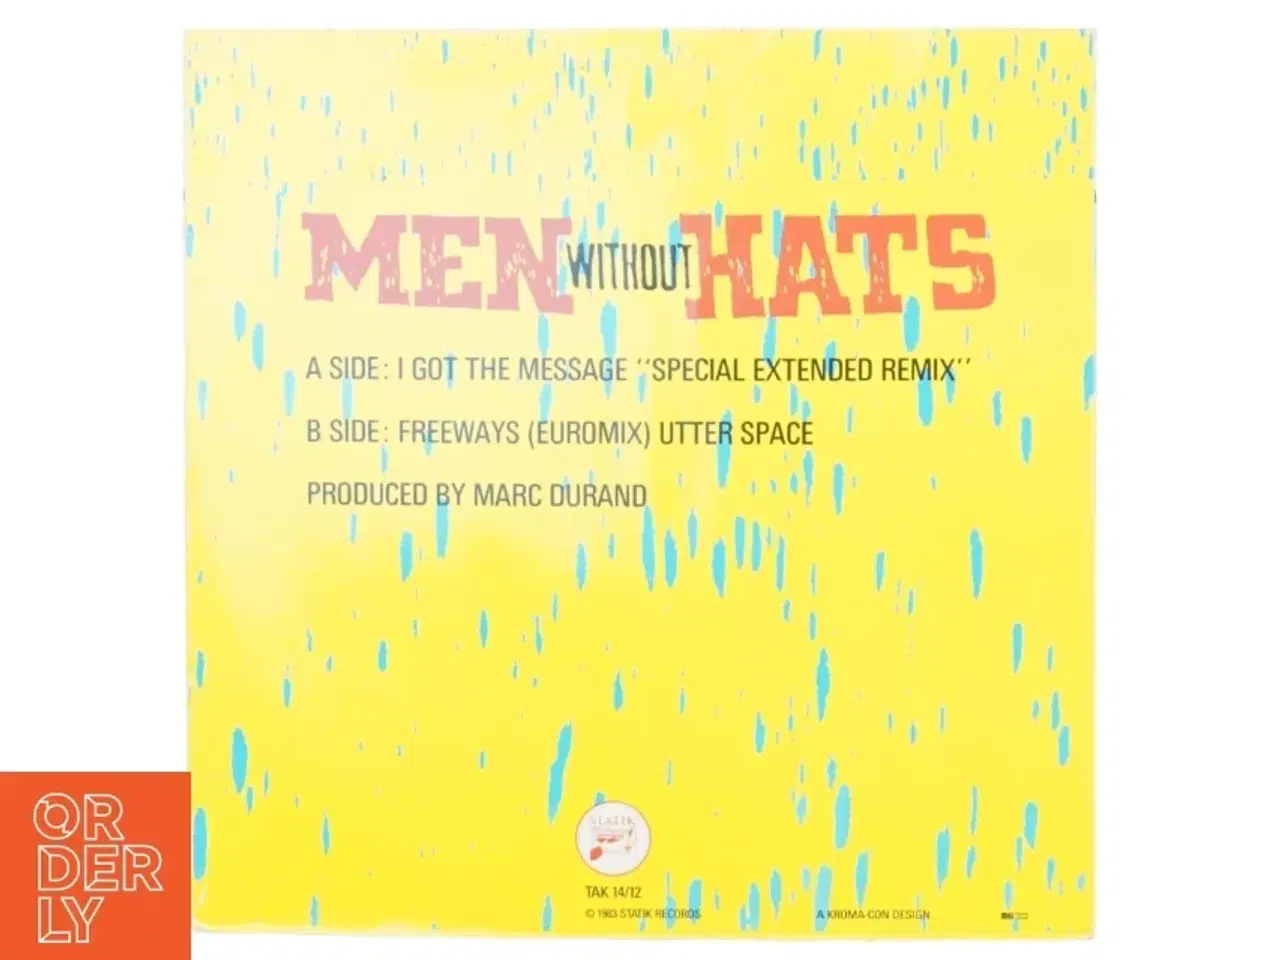 Billede 2 - LP af men without hats; "I got the message" fra Statik Records